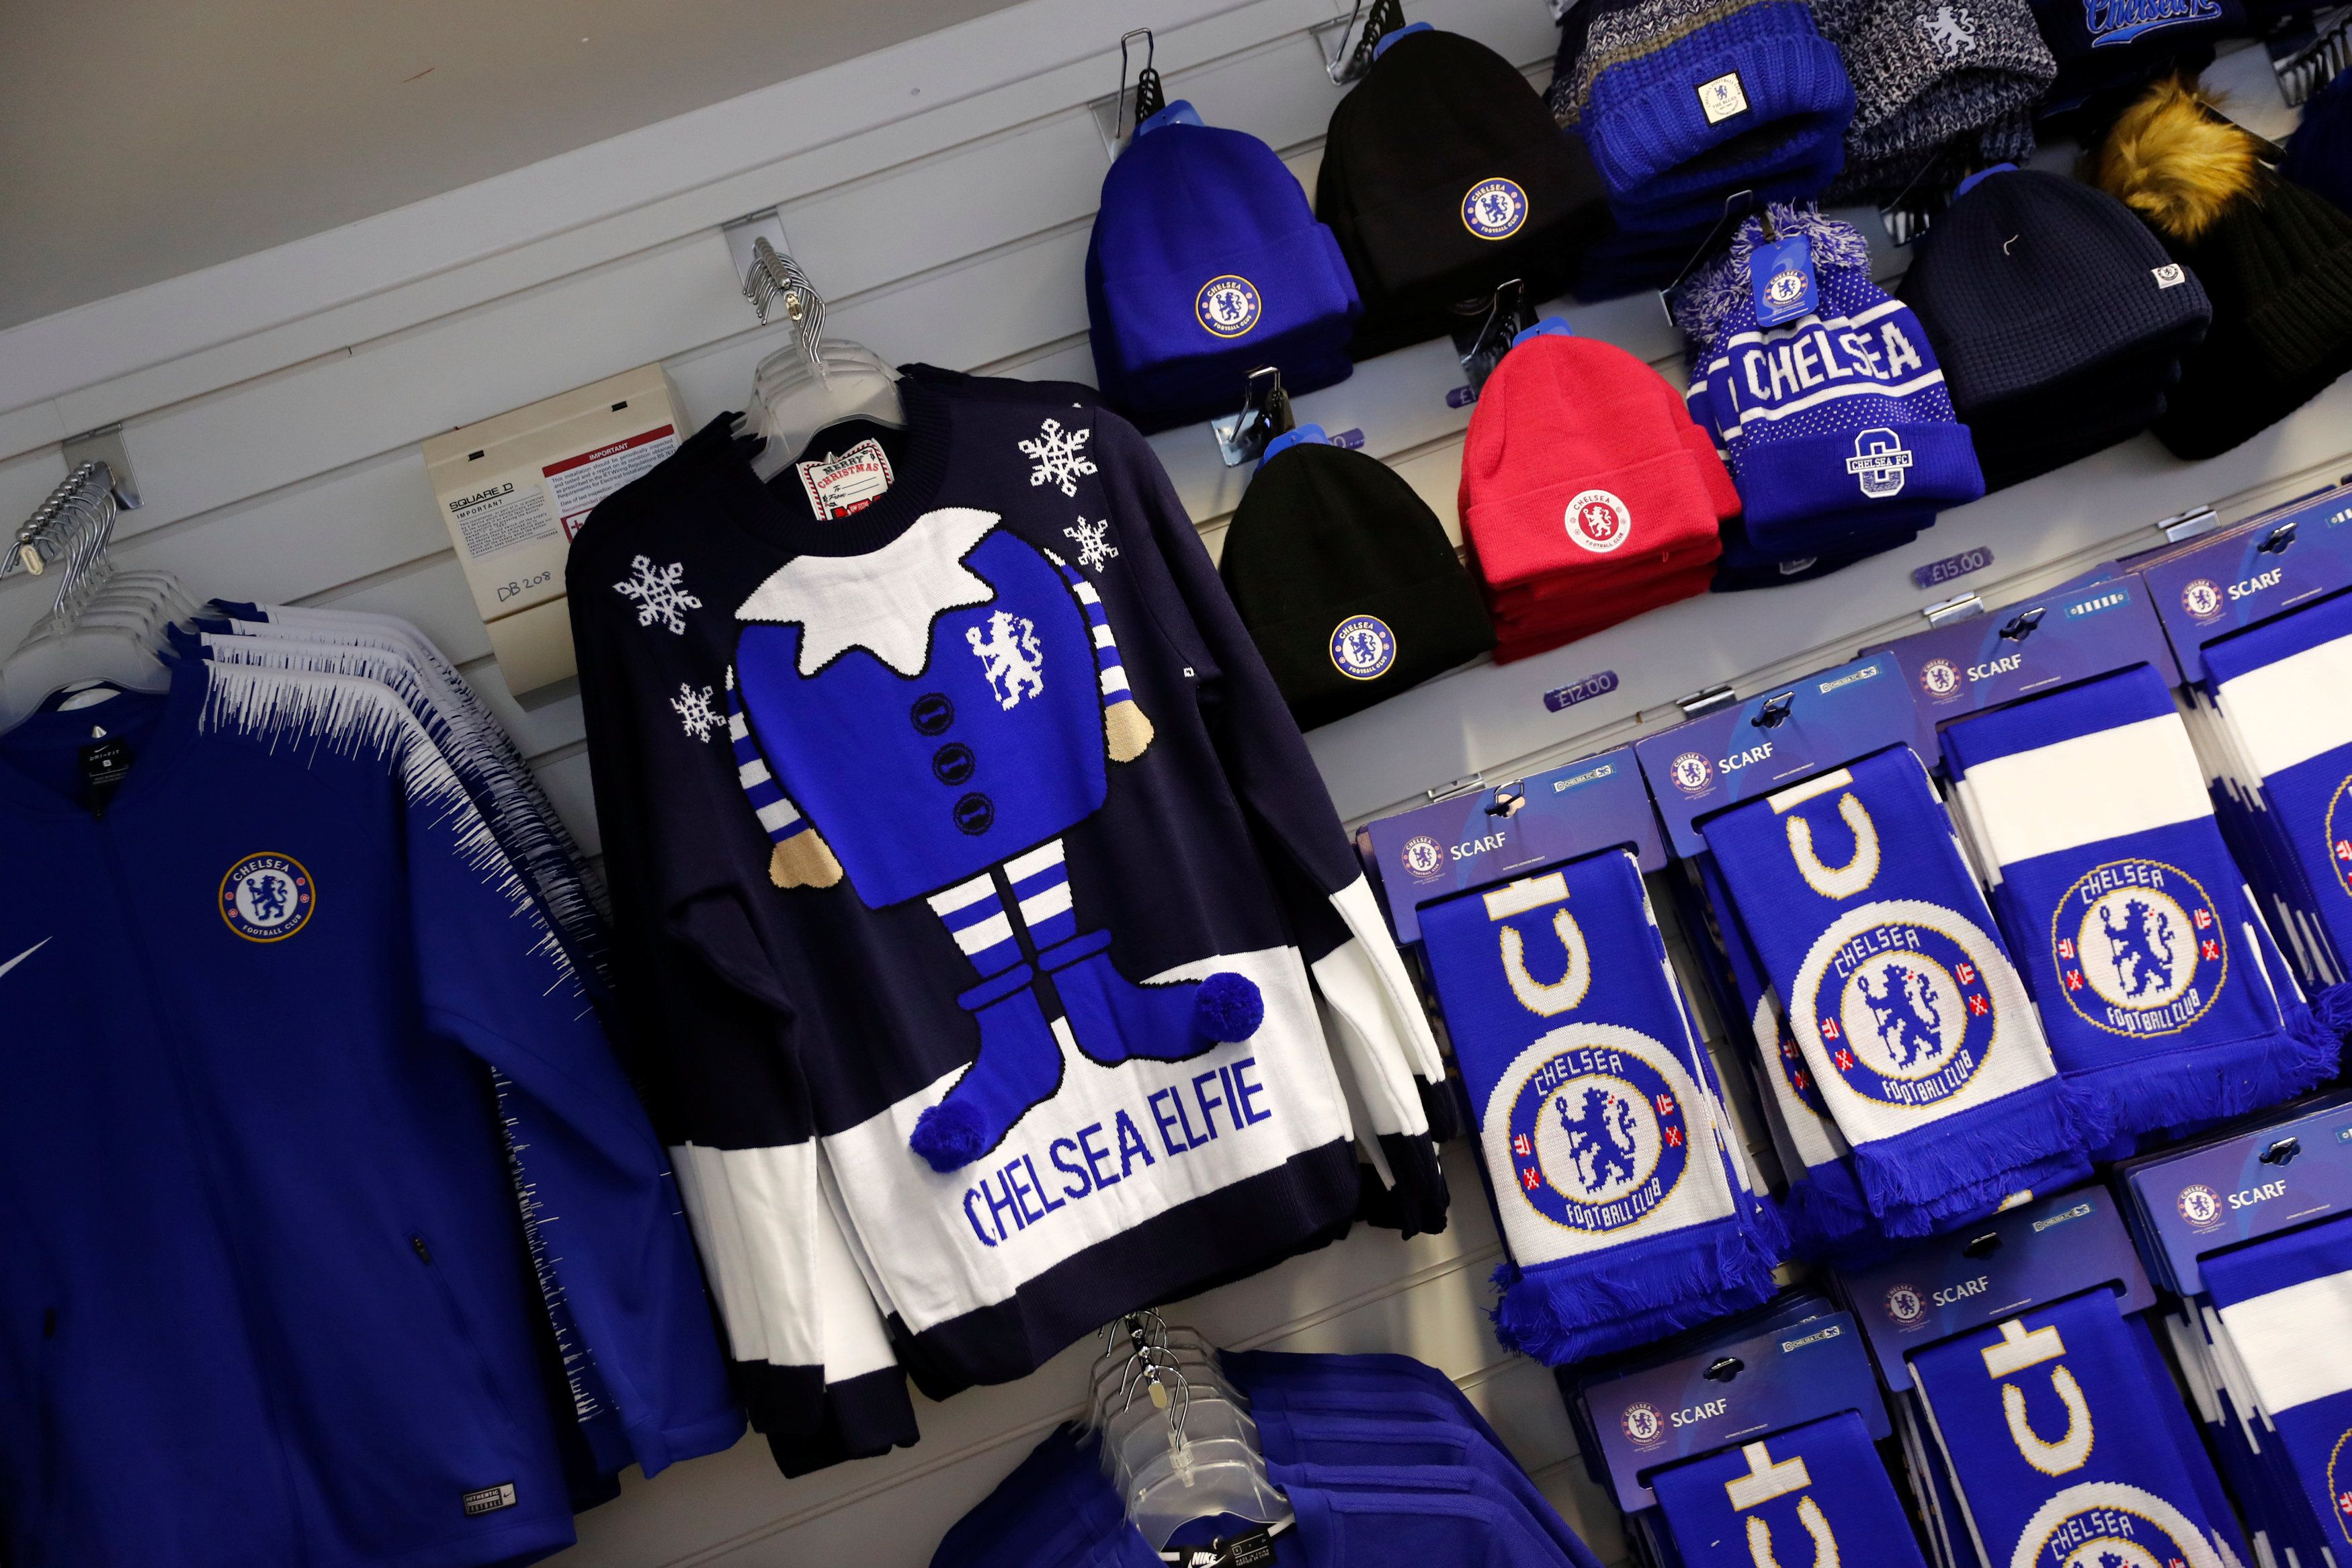 Chelsea's club shop.